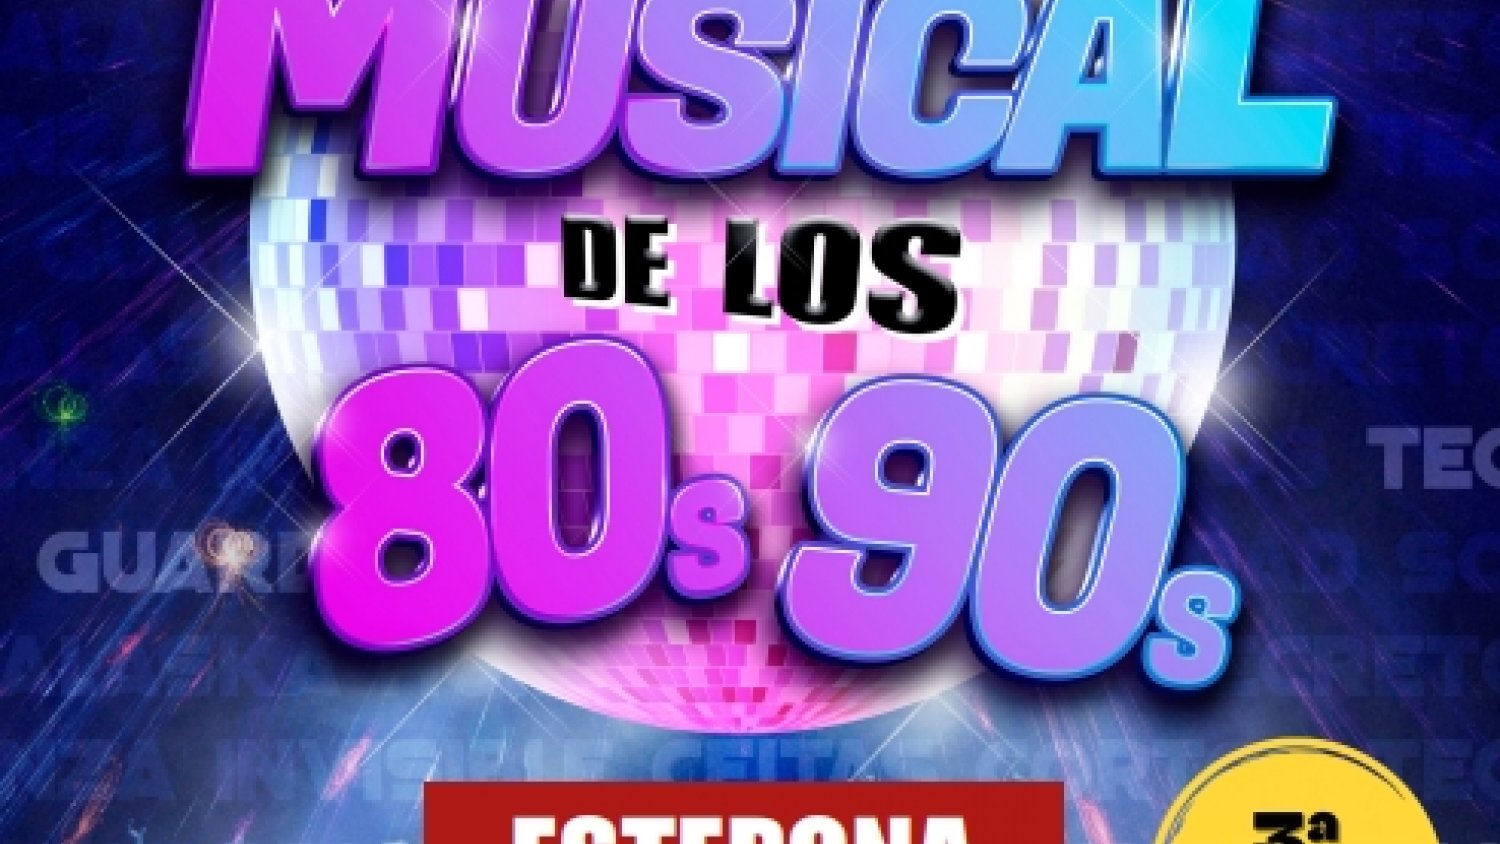 El Auditorio Felipe VI acoge ‘El musical de los 80s y 90s’